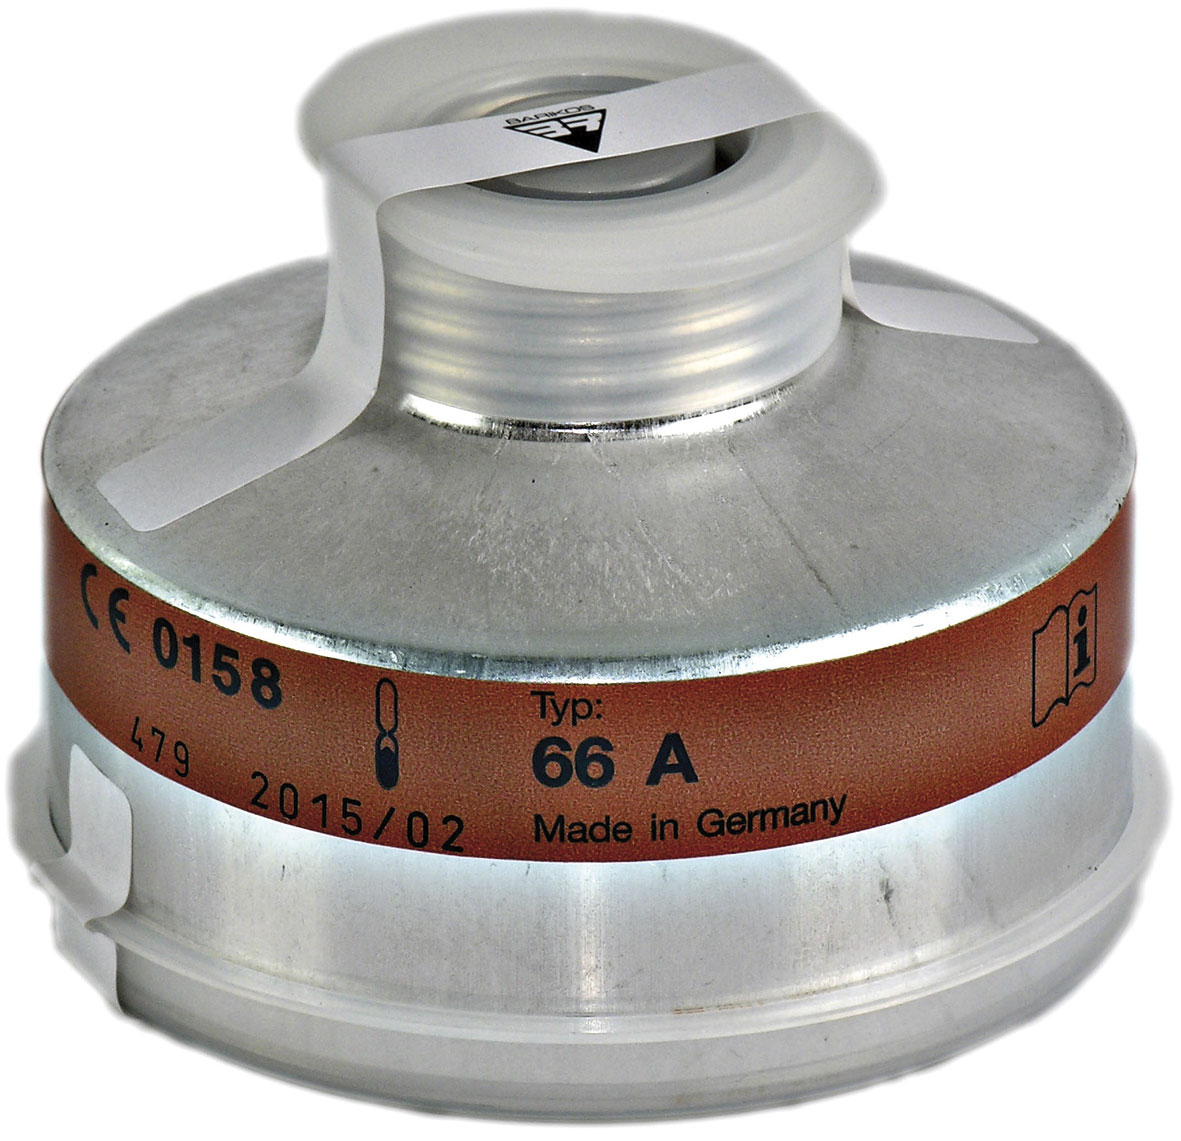 Filtro respiratorio rosca para gases y vapores orgánicos p.e.&gt;65º, gases inorgánicos y partículas. Clase protección: A2-B2-P3. BARIKOS